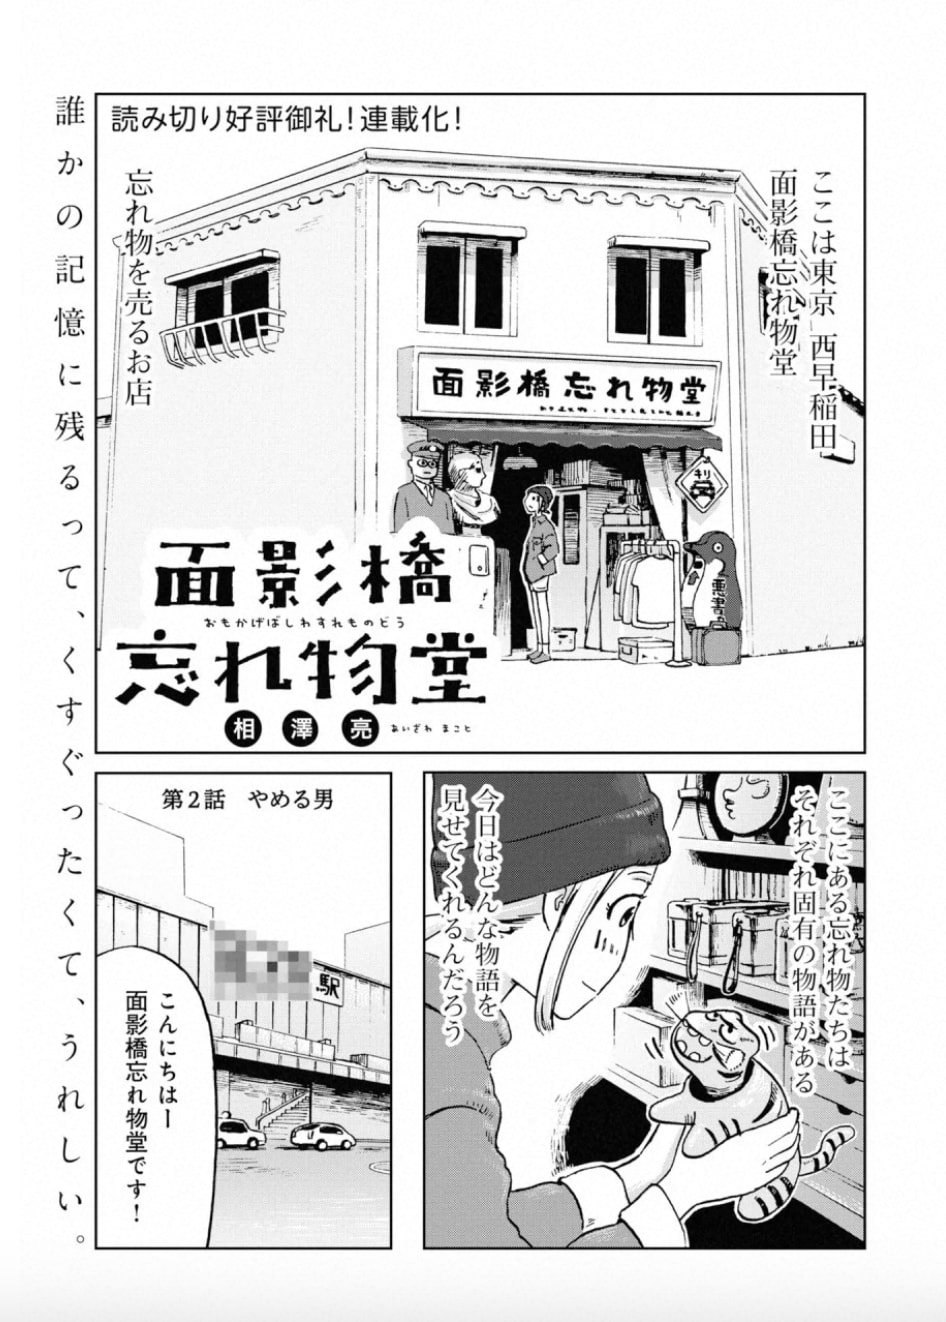 相澤亮 漫画家 の作品情報 クチコミ マンバ